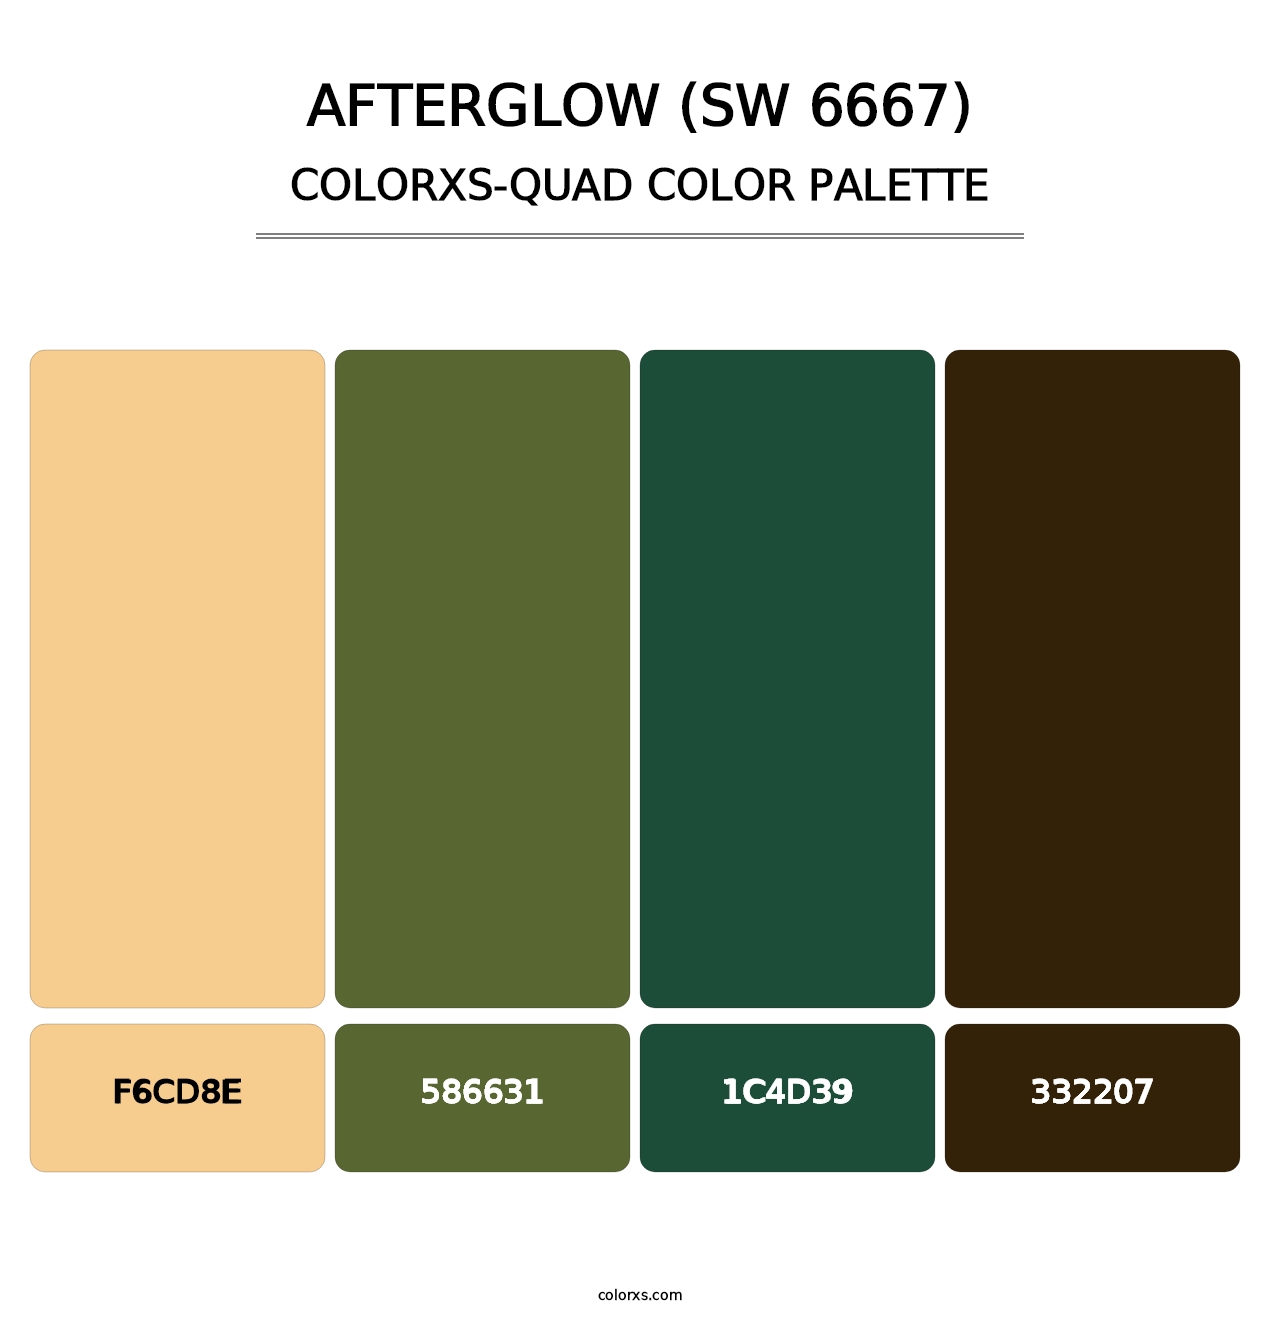 Afterglow (SW 6667) - Colorxs Quad Palette